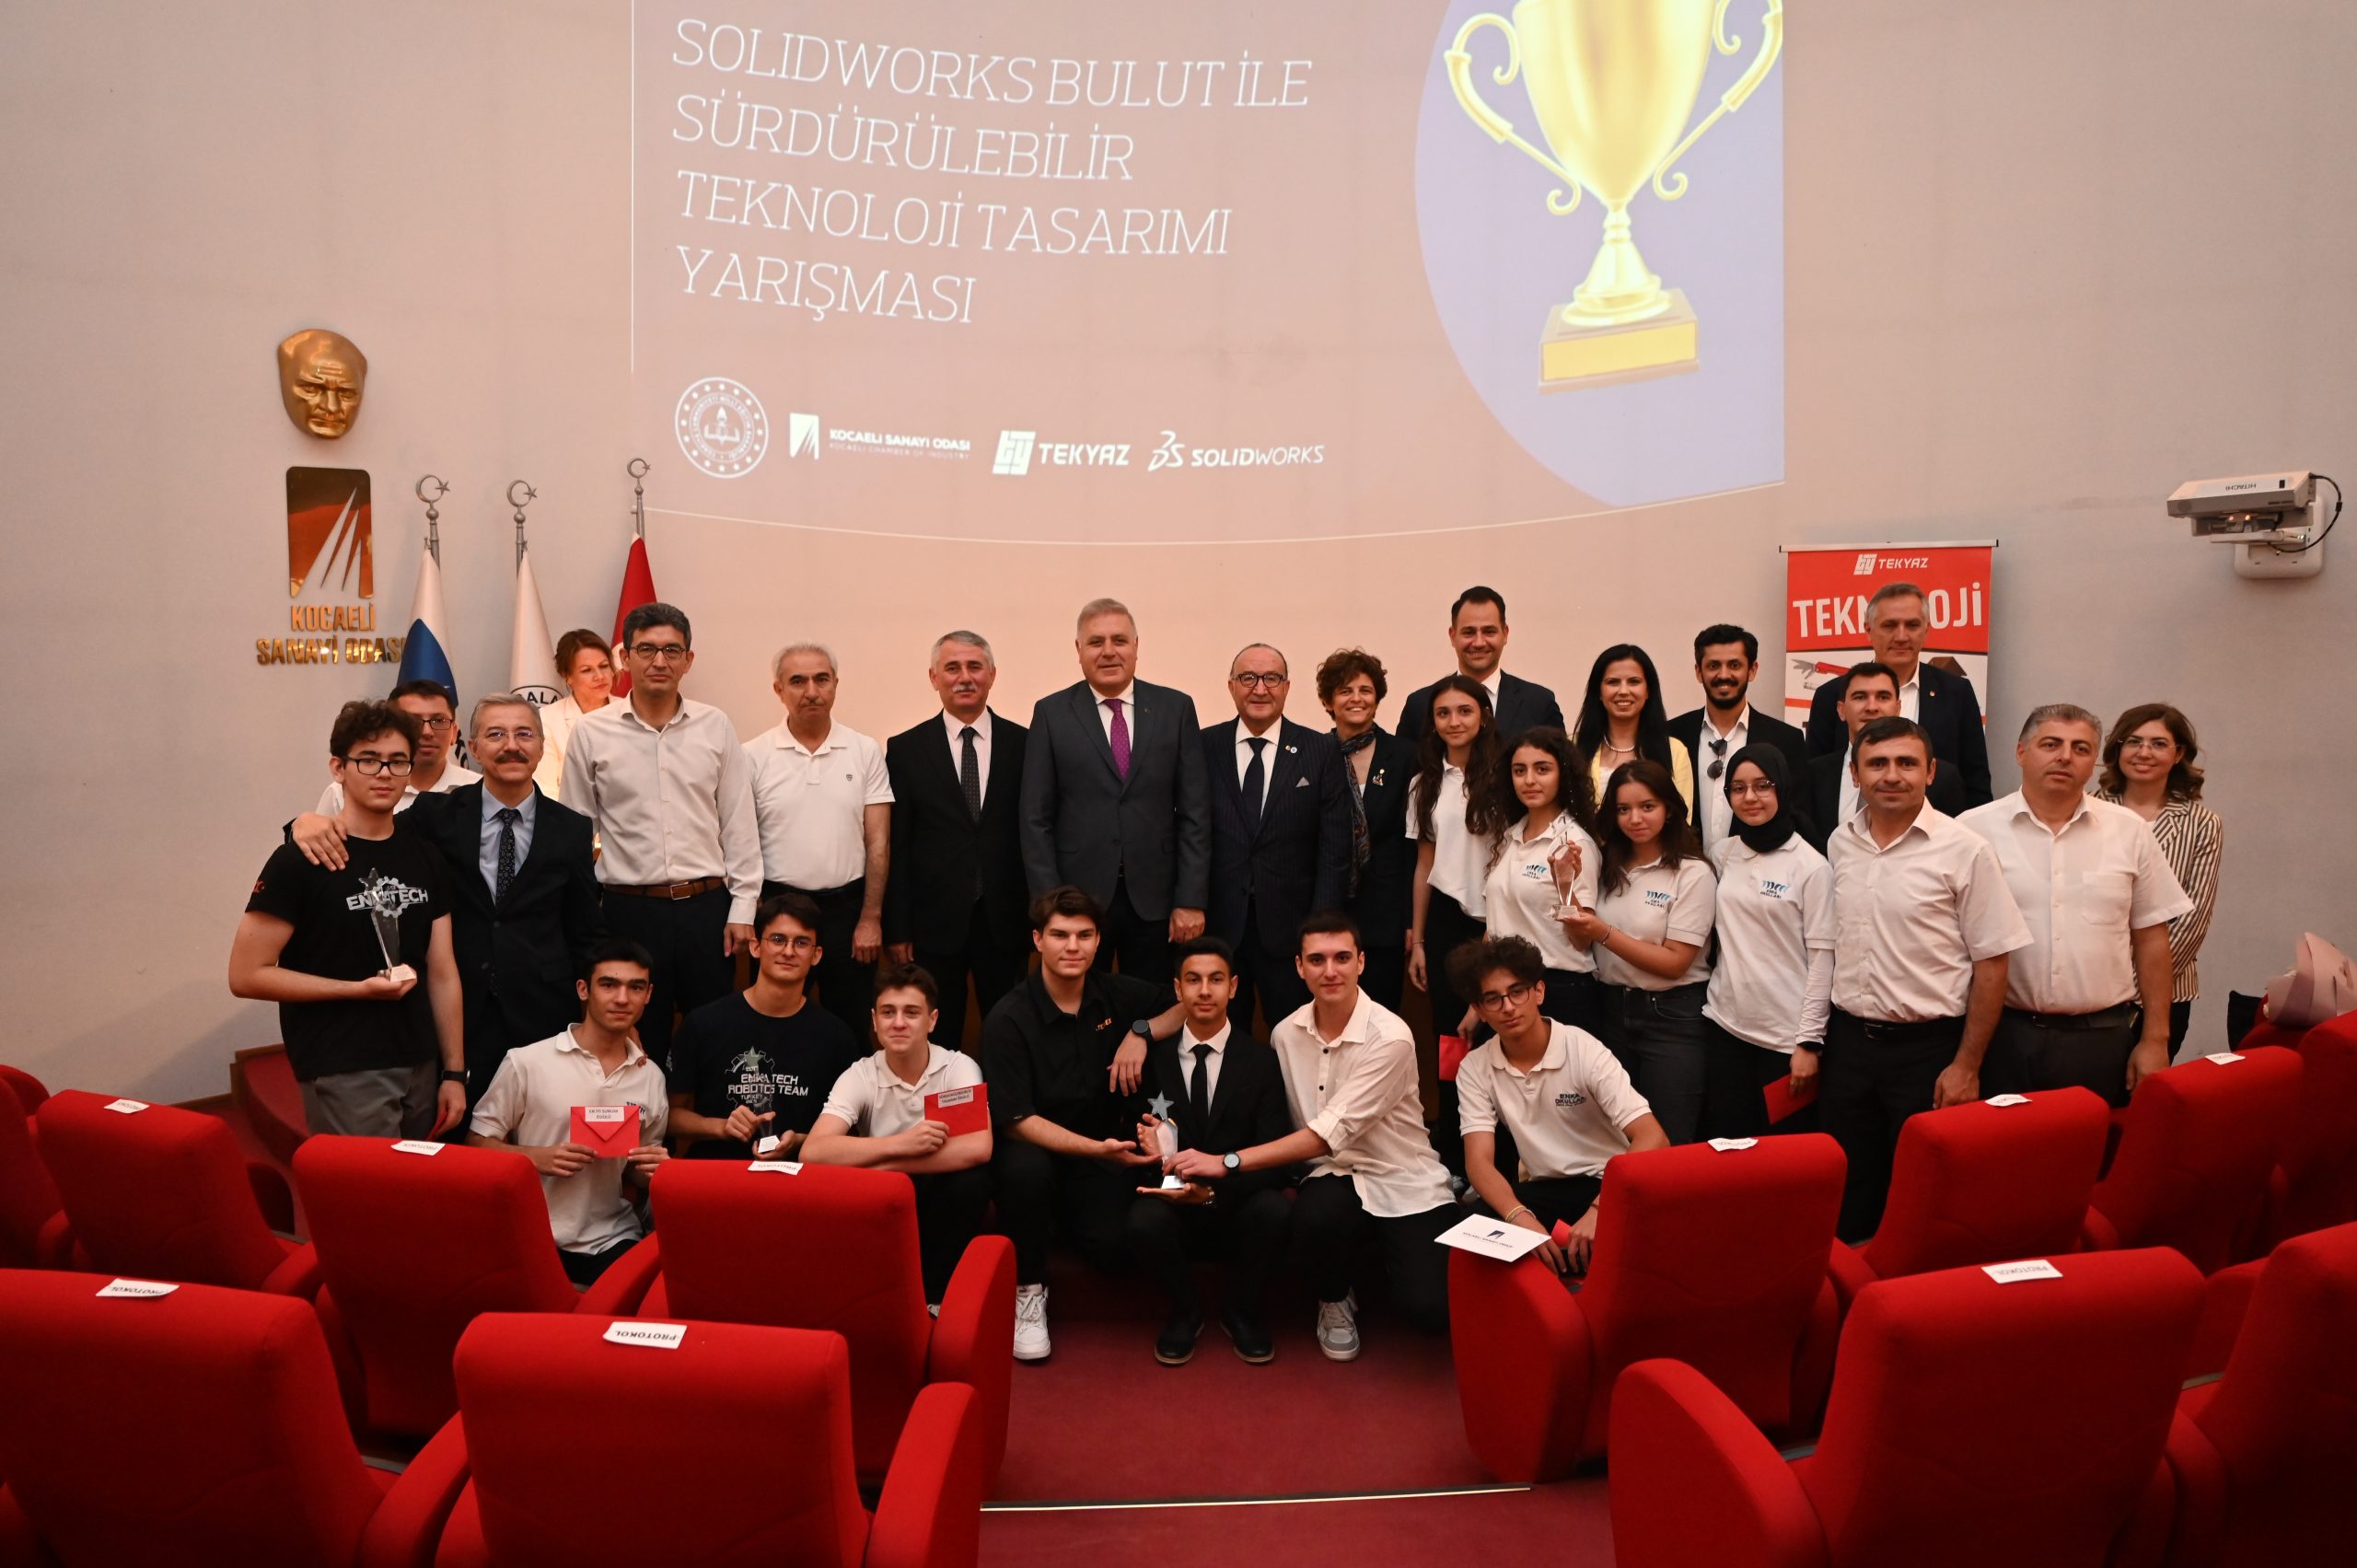 ‘Meslek Liseleri Tasarlıyor, Solidworks Bulut ile Sürdürülebilir Teknoloji Tasarımı Yarışması’nda ödüller sahiplerini buldu